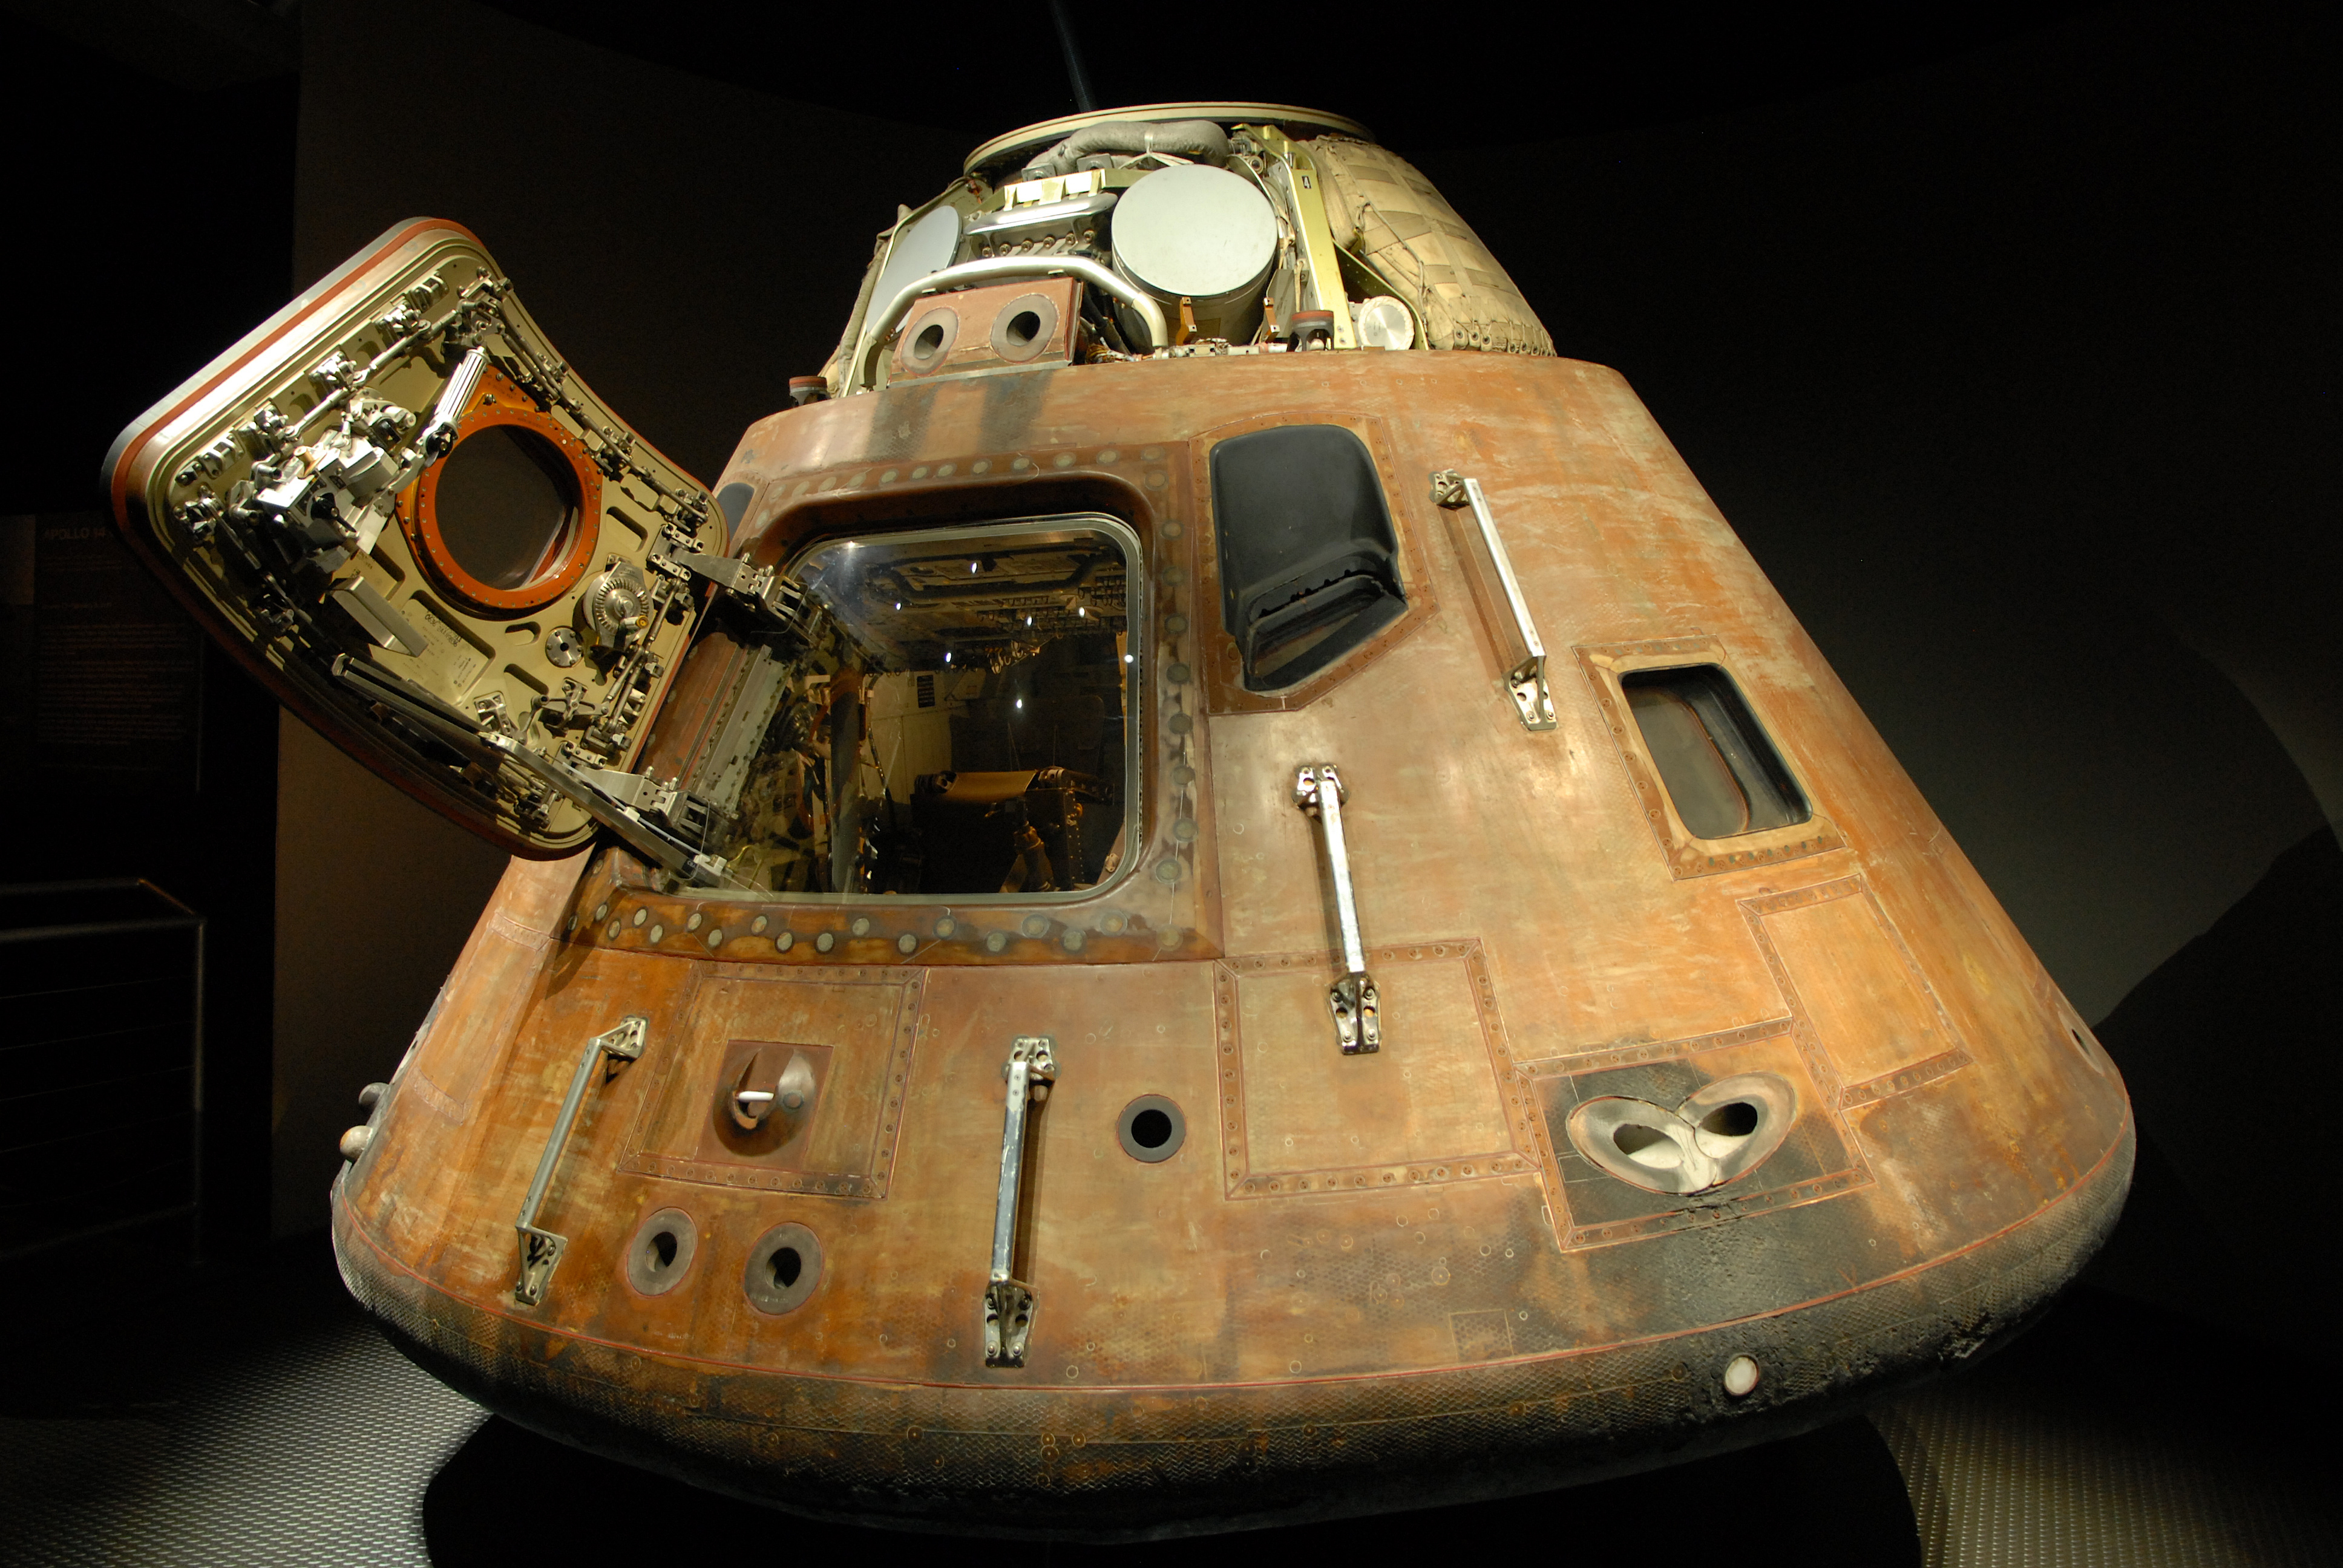 Apollo capsule. Image courtesy of Adobe Stock.